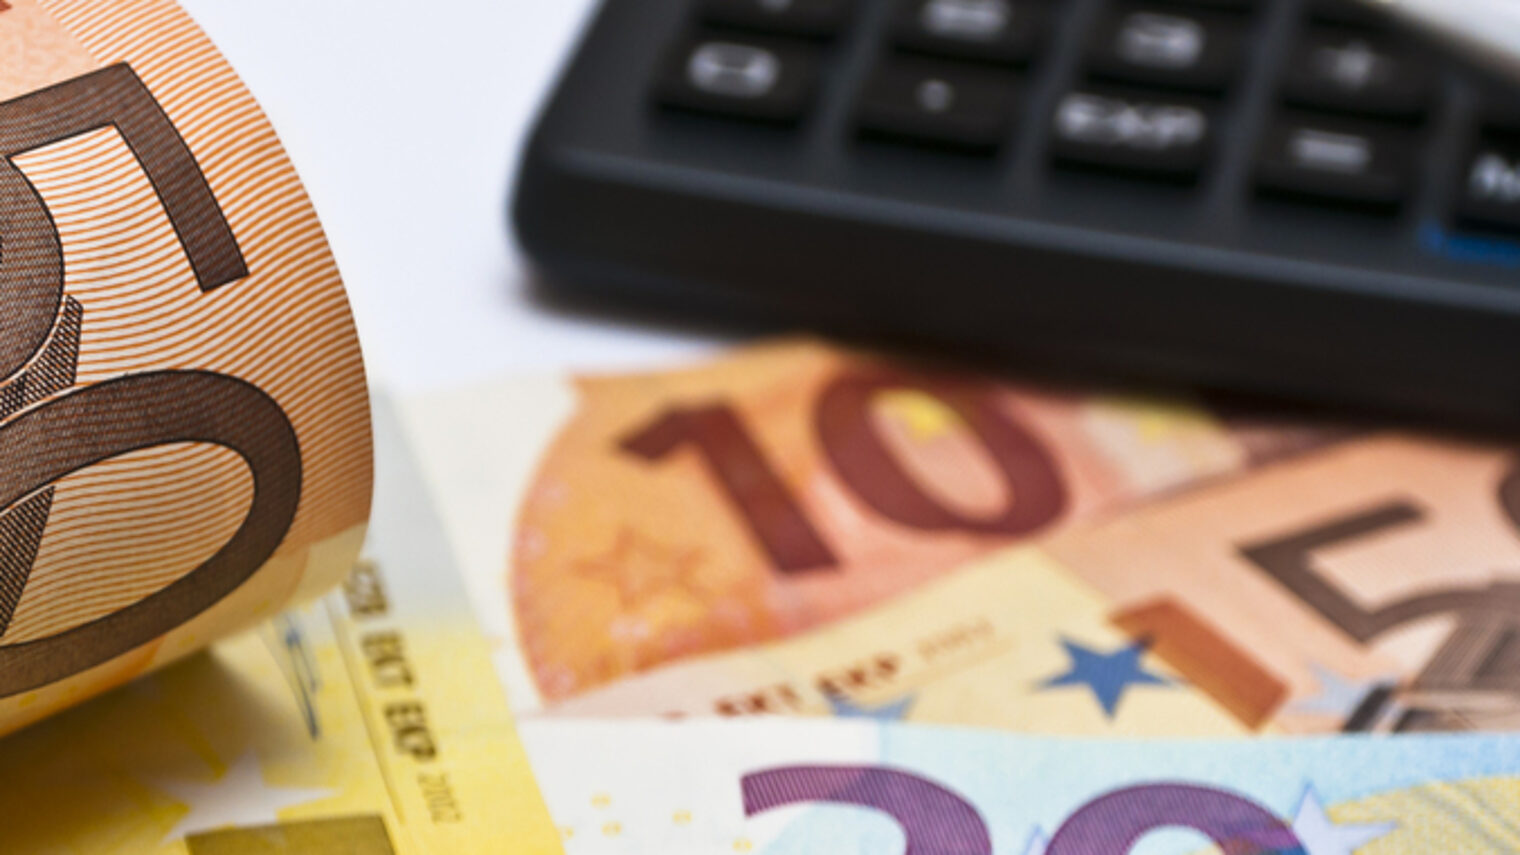 50 Euro Geldscheine, ein Taschenrechner und ein Stift 